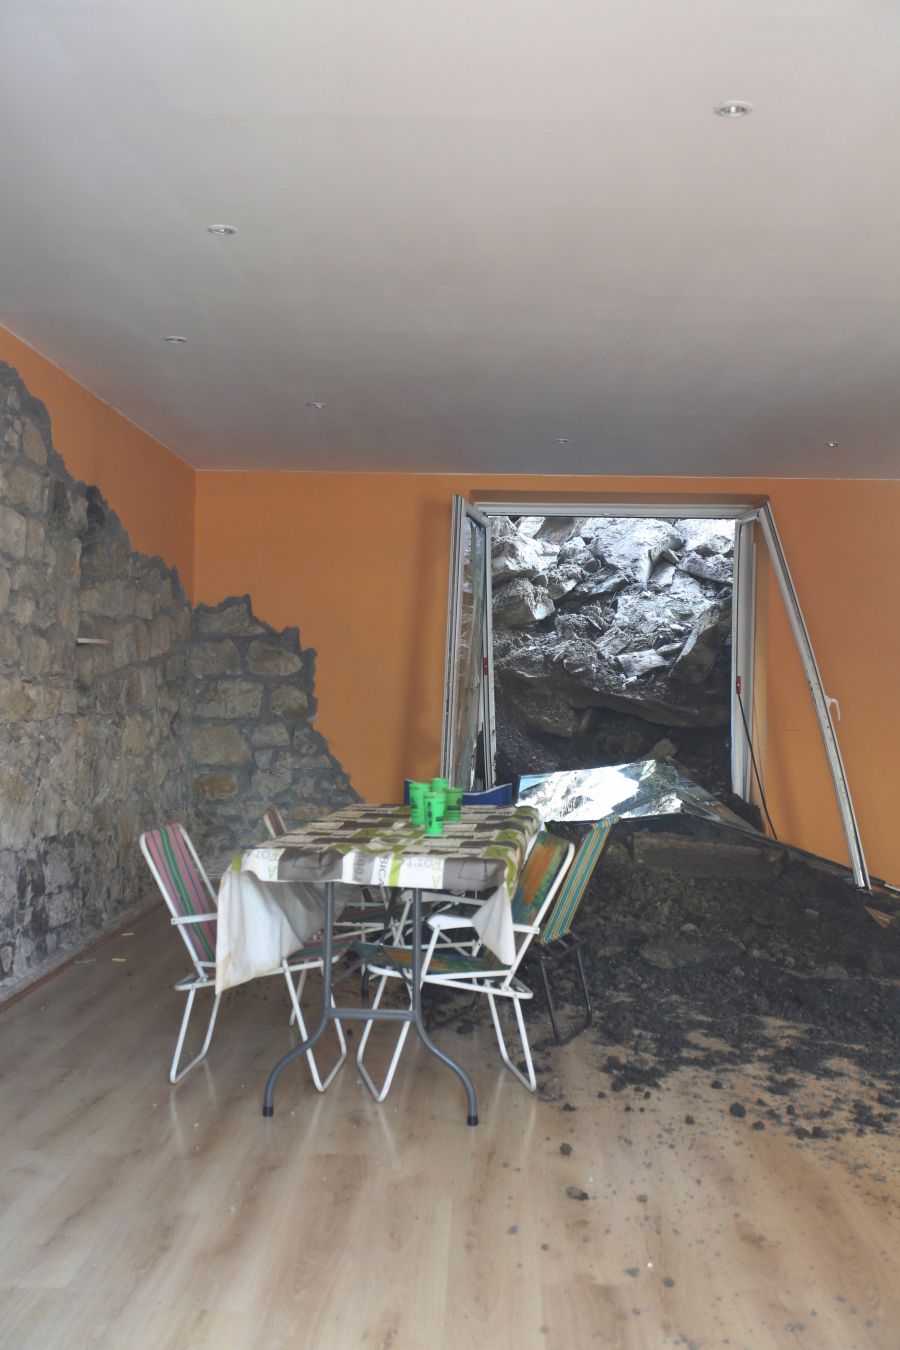 Siete personas han tenido que abandonar sus viviendas por un derrumbe ocurrido en la avenida de Zarautz en Donostia